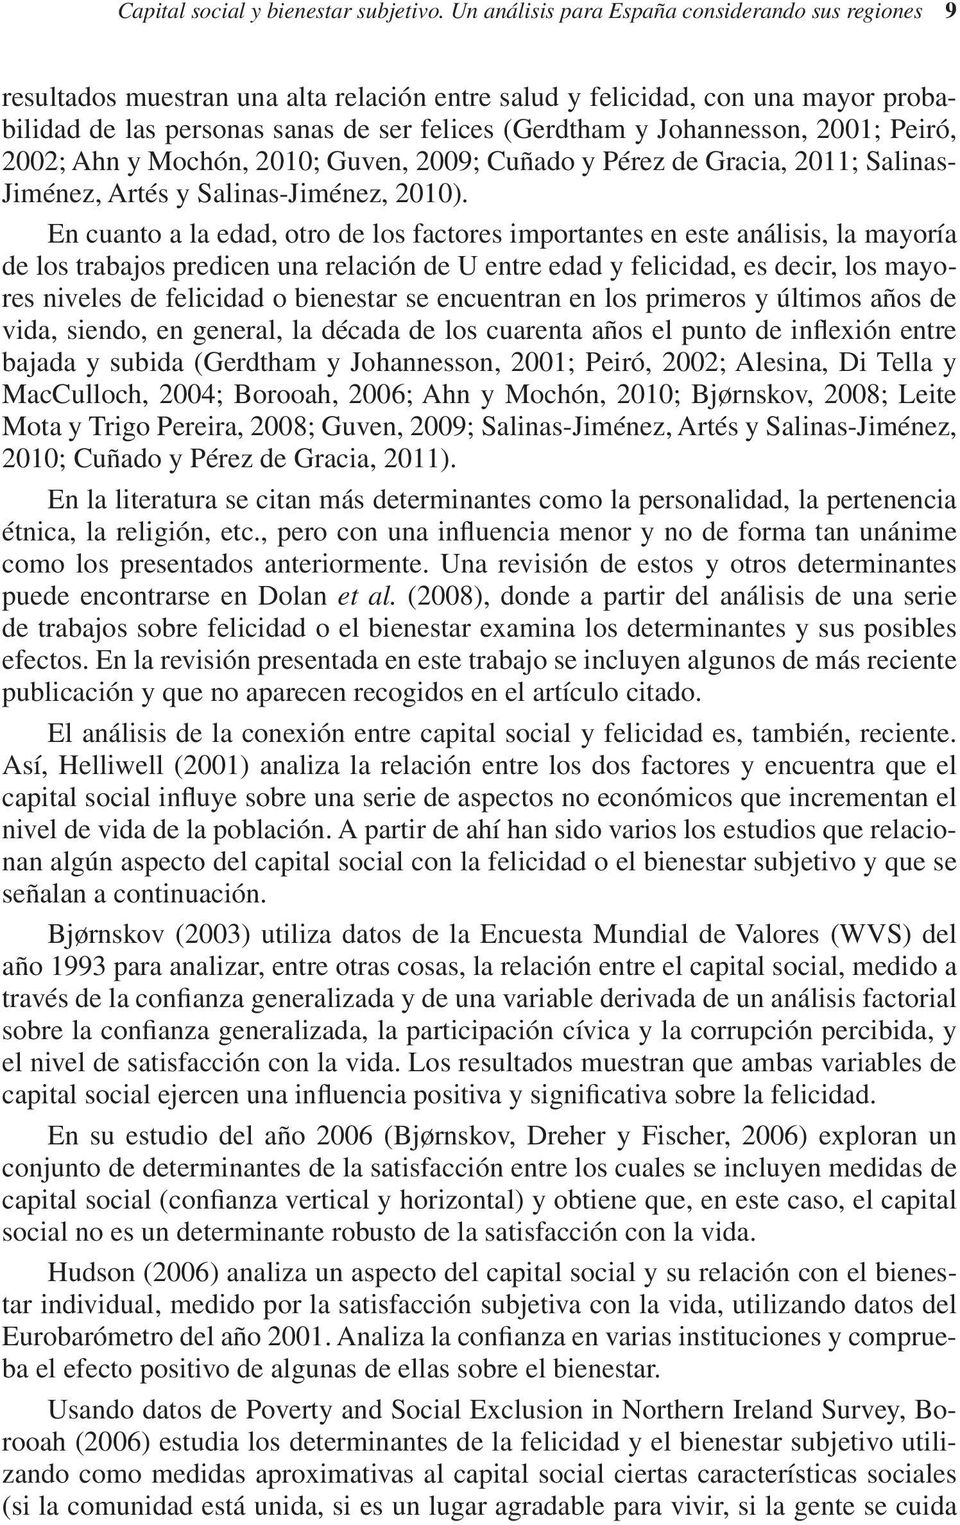 Johannesson, 2001; Peiró, 2002; Ahn y Mochón, 2010; Guven, 2009; Cuñado y Pérez de Gracia, 2011; Salinas- Jiménez, Artés y Salinas-Jiménez, 2010).